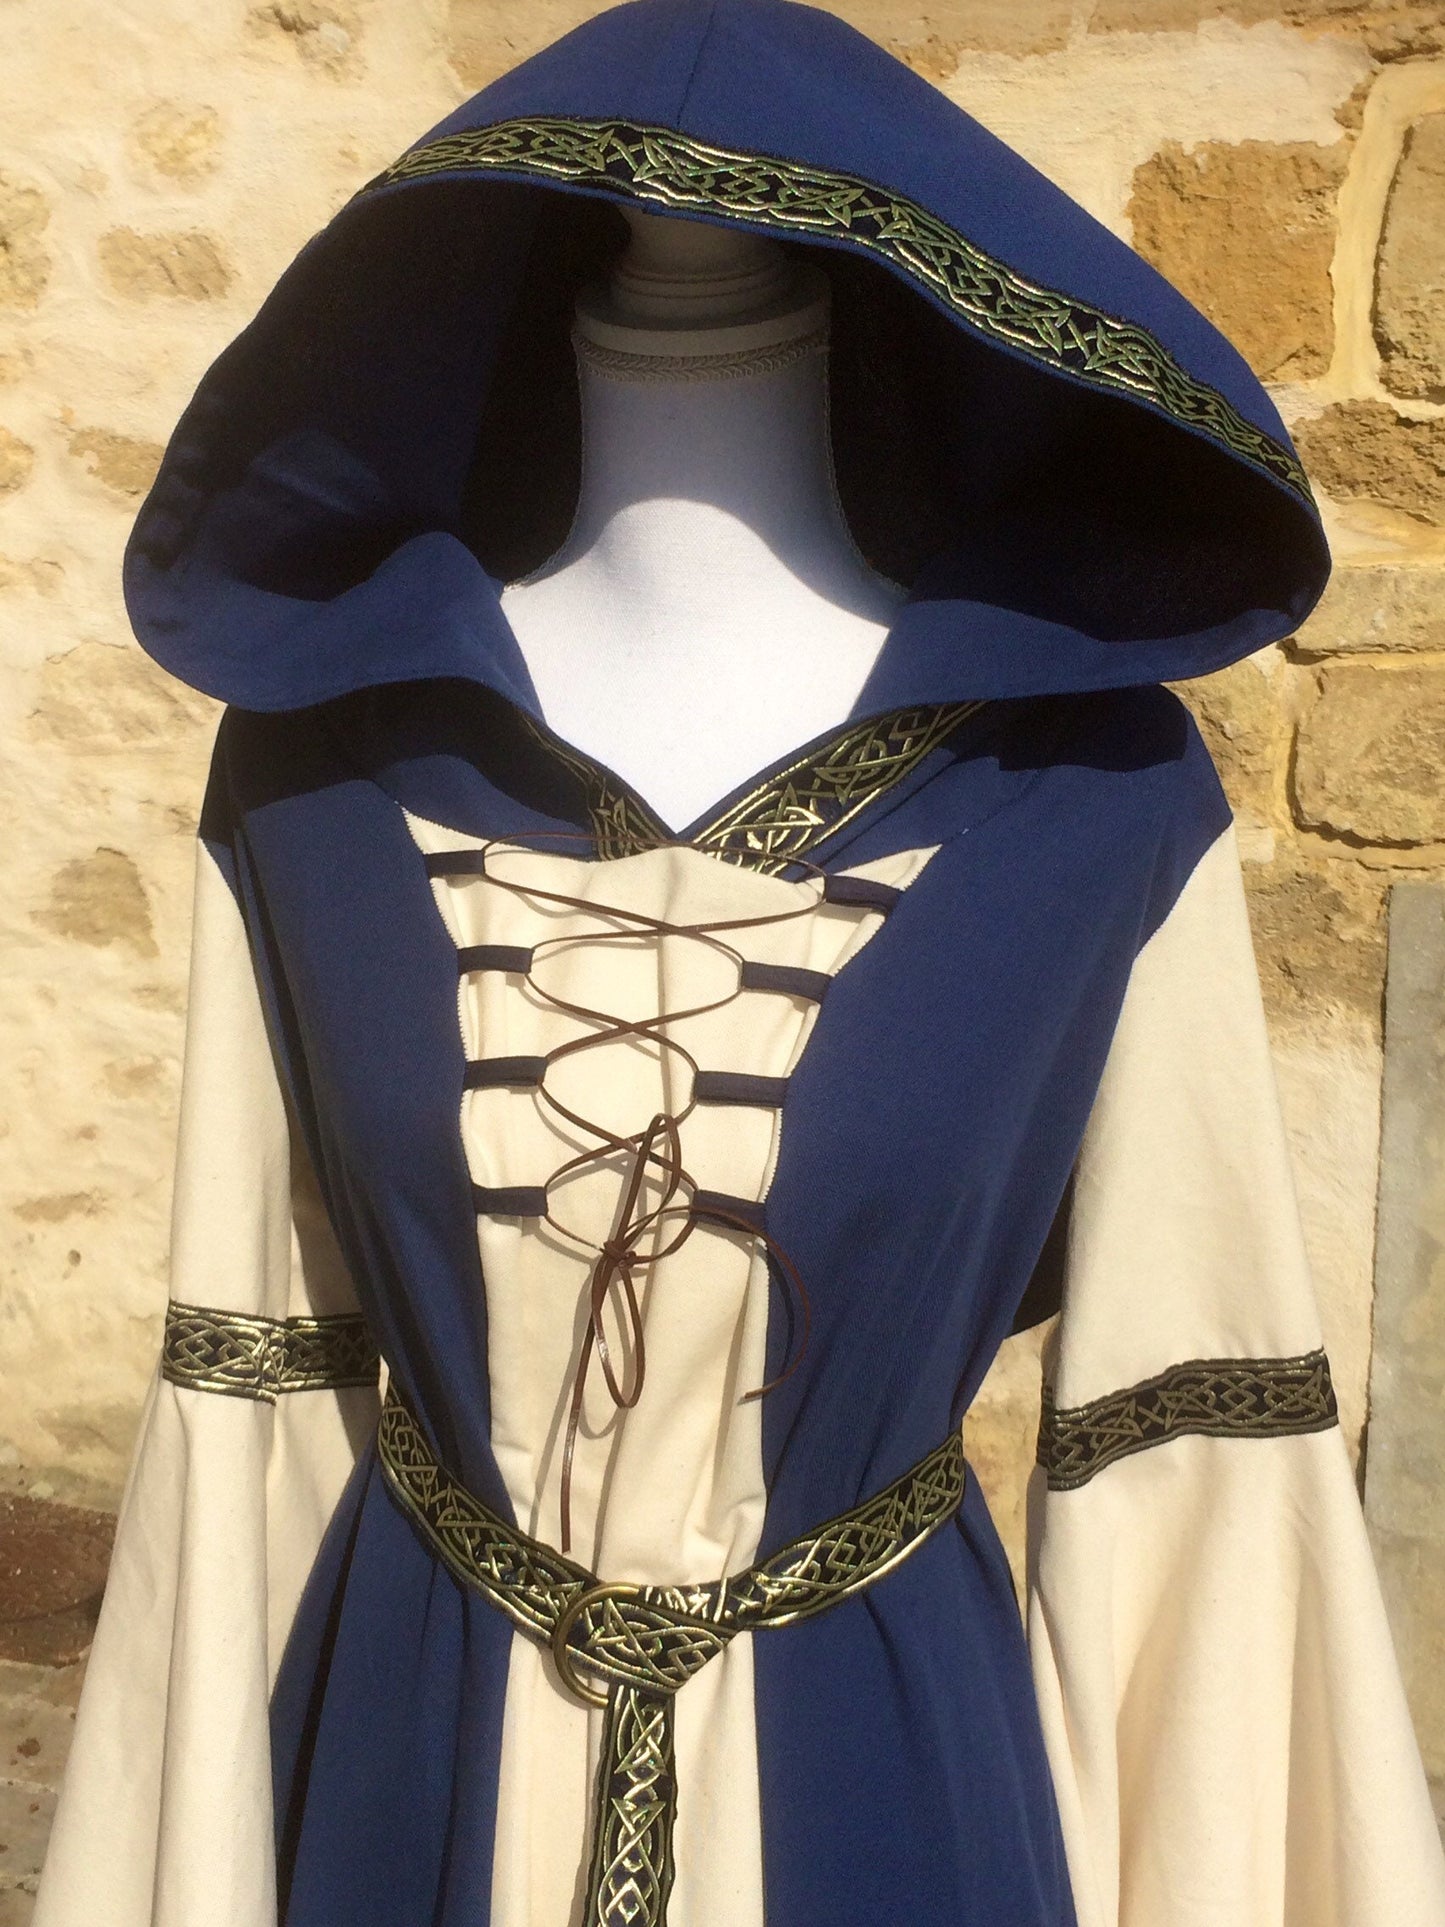 Robe médievale bicolore bleue et écrue avec capuche ceinture et grandes manches, costume elfique pour femme mariage médiéval, celtique